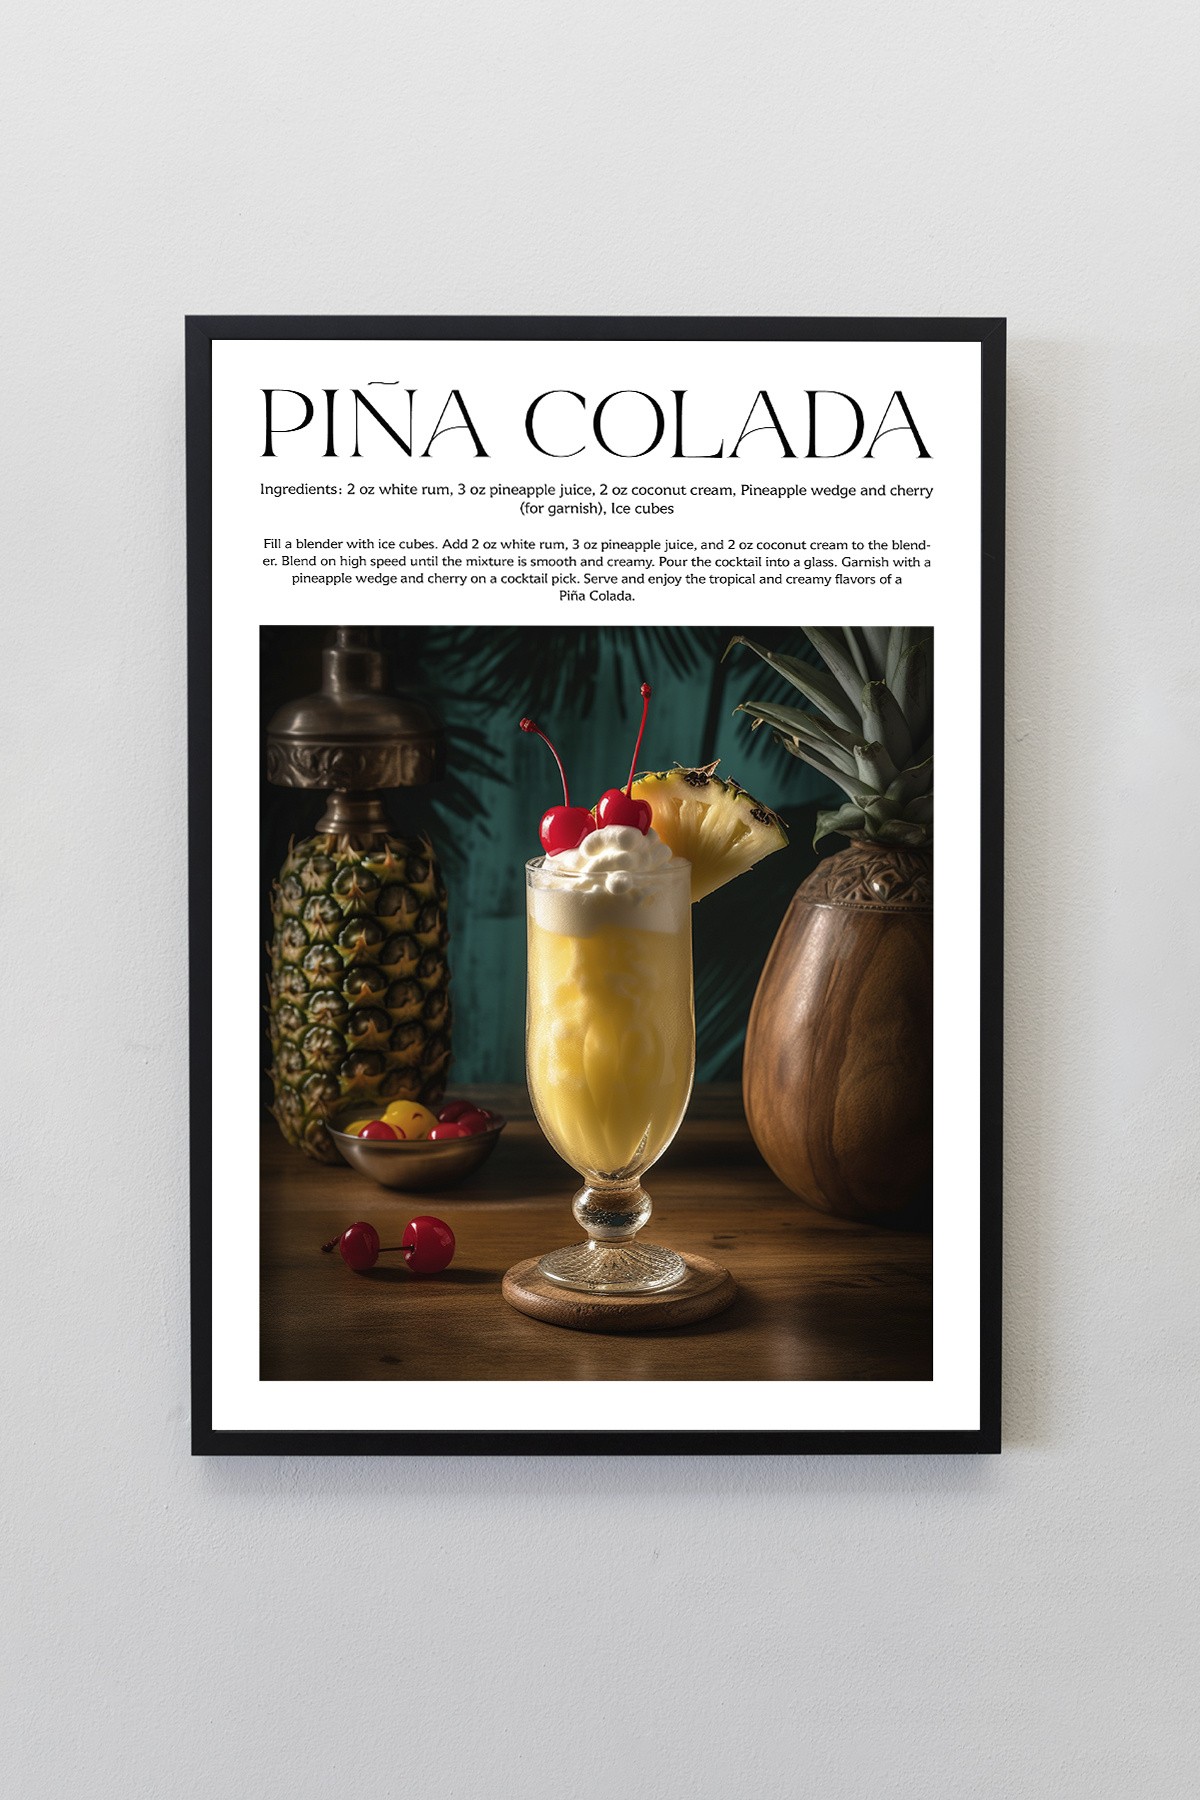 Pina Colada Kokteyl Tarifleri Tasarımlı Çerçeveli Poster Tablo